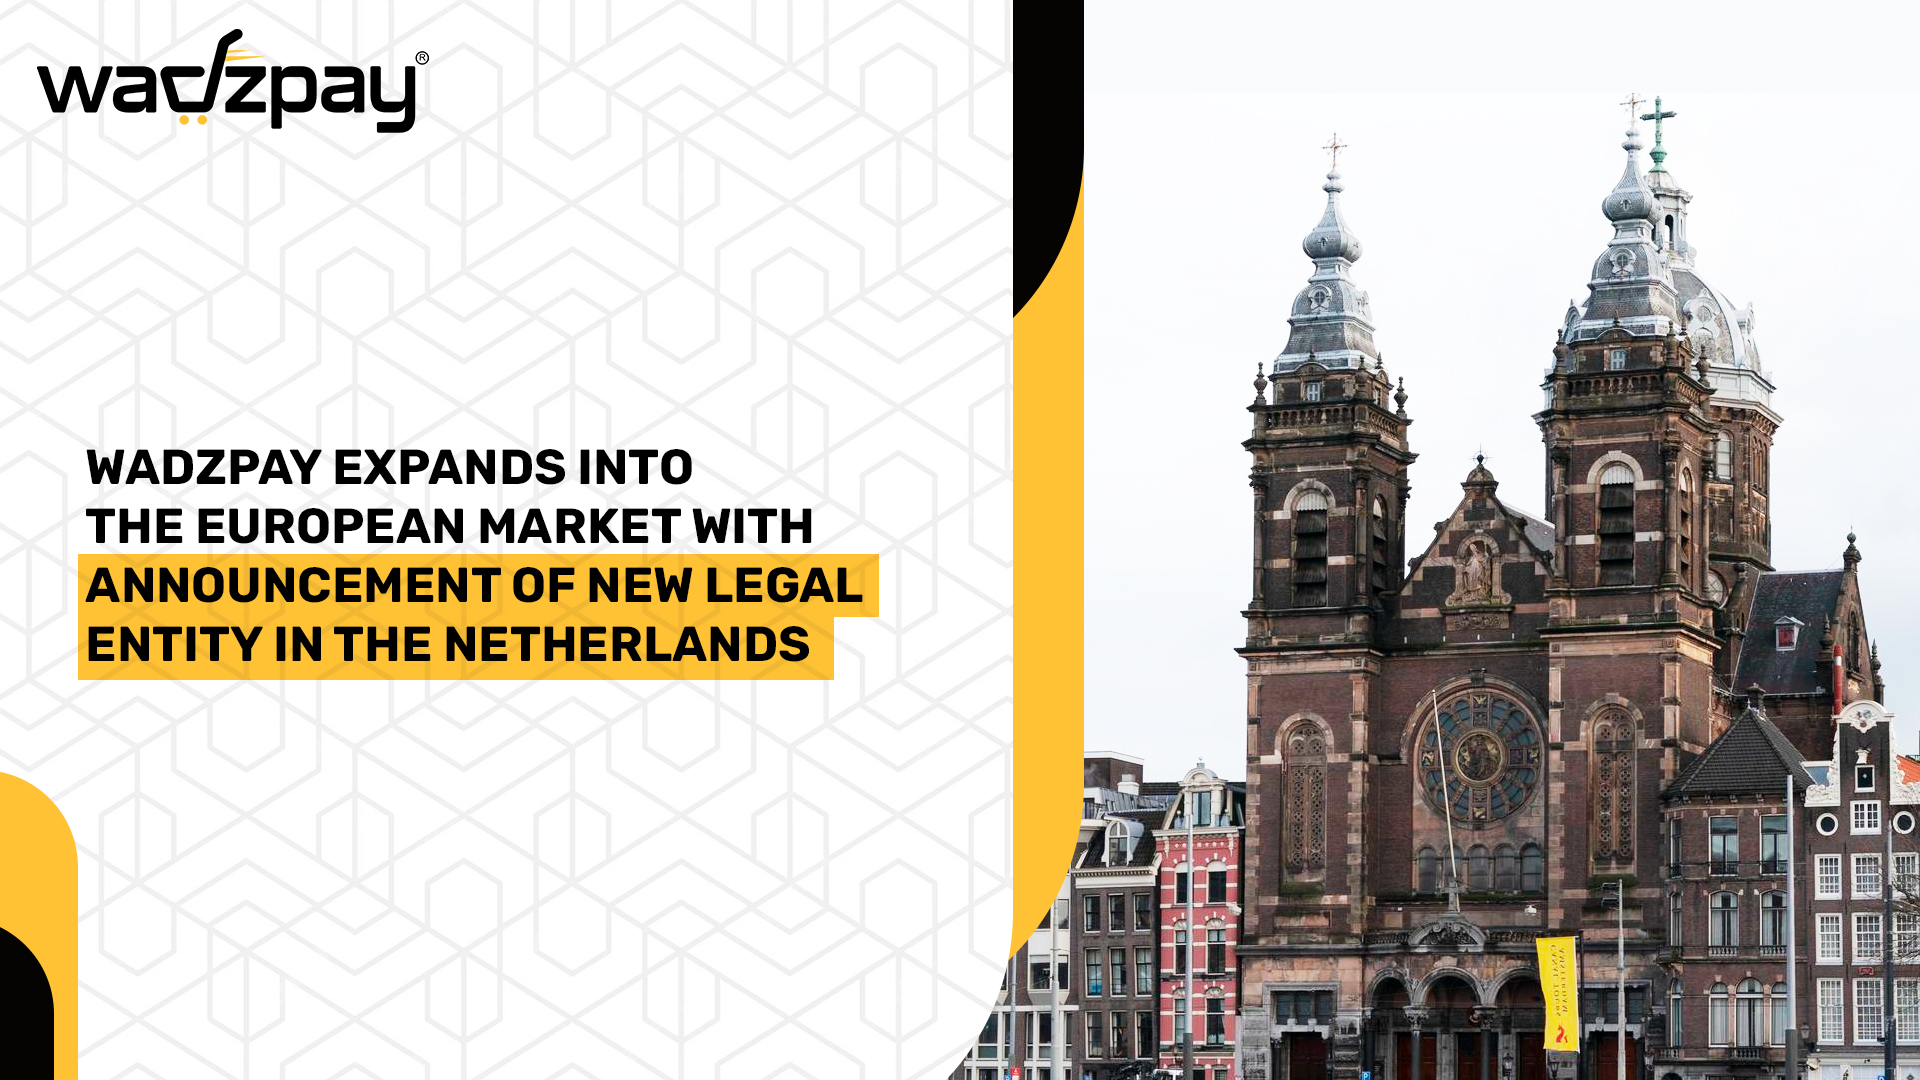 沃兹贝在荷兰注册新法人实体,扩大进入欧洲市场